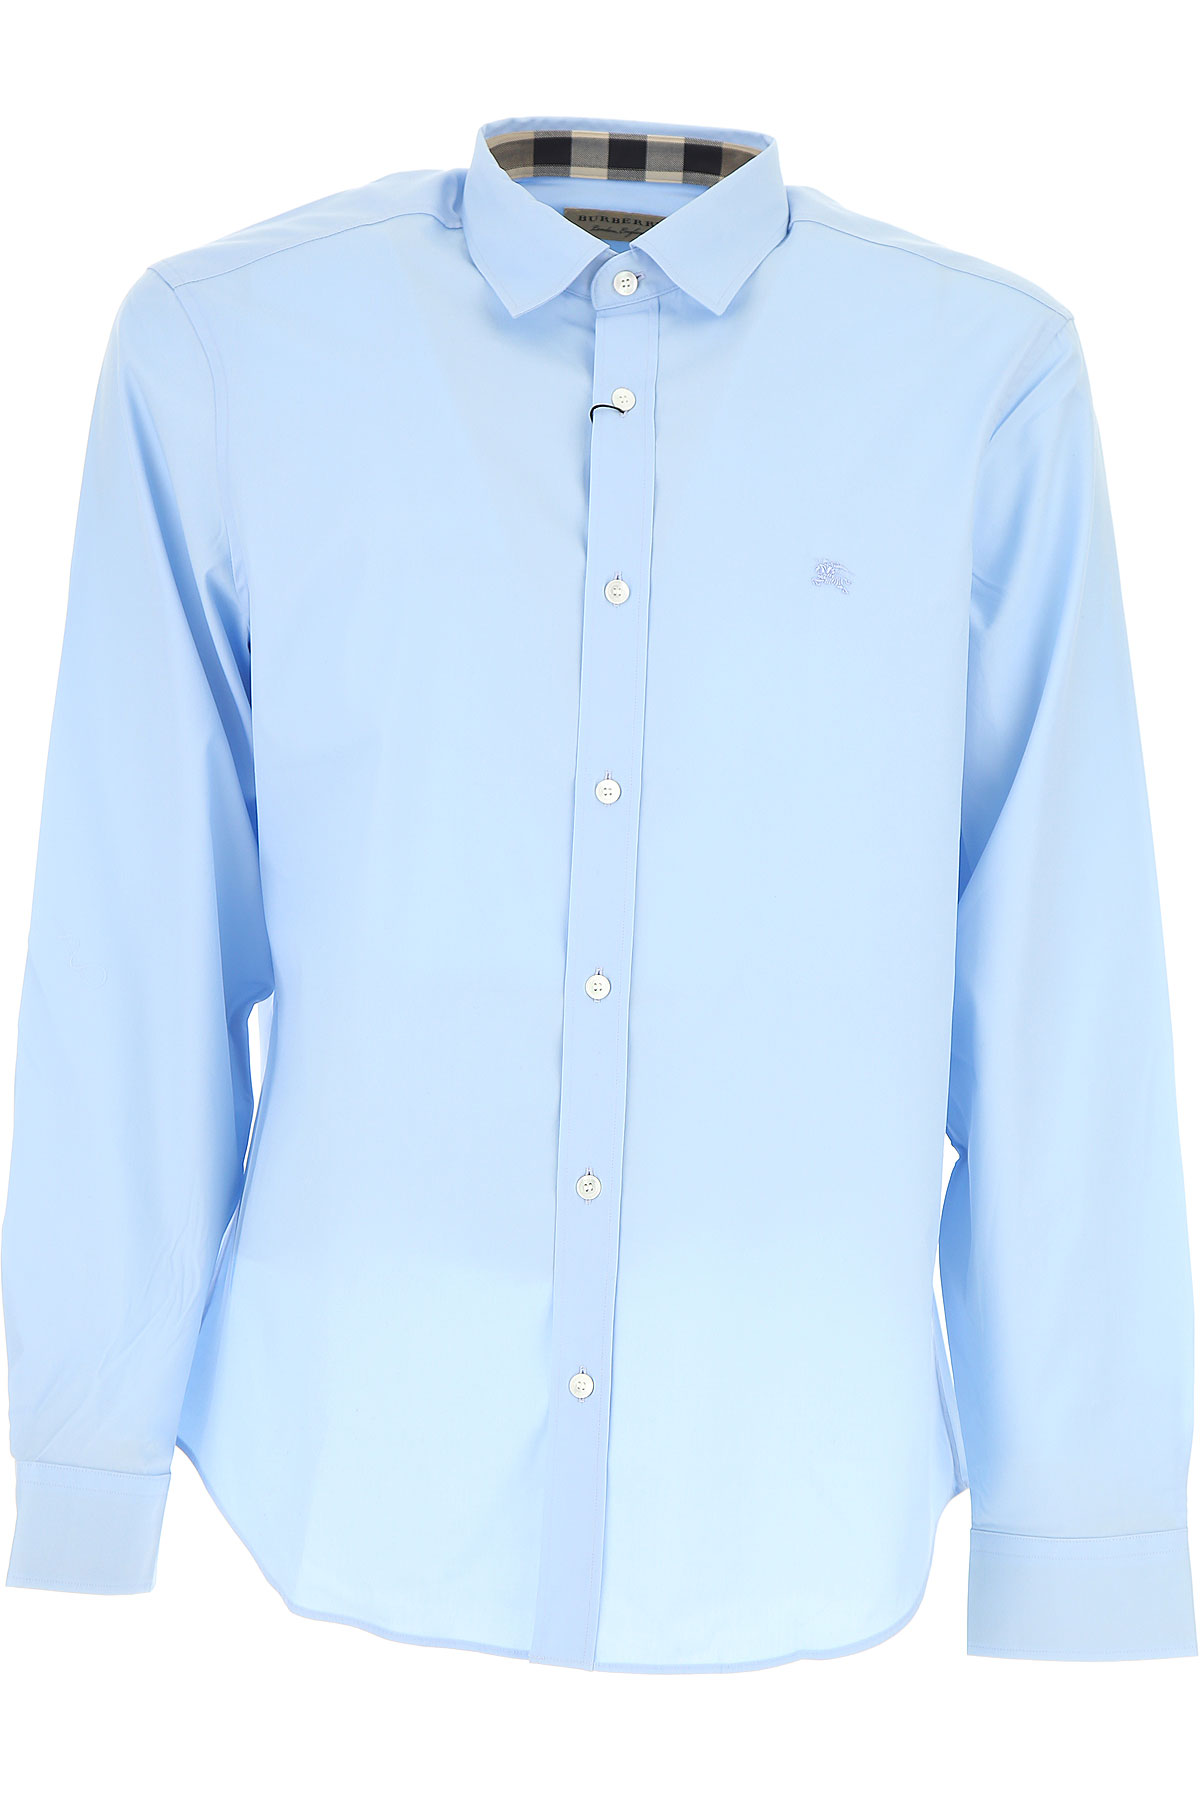 Vêtements Homme Burberry, Bleu clair, Coton, 2017, L L M M S S XL XXL